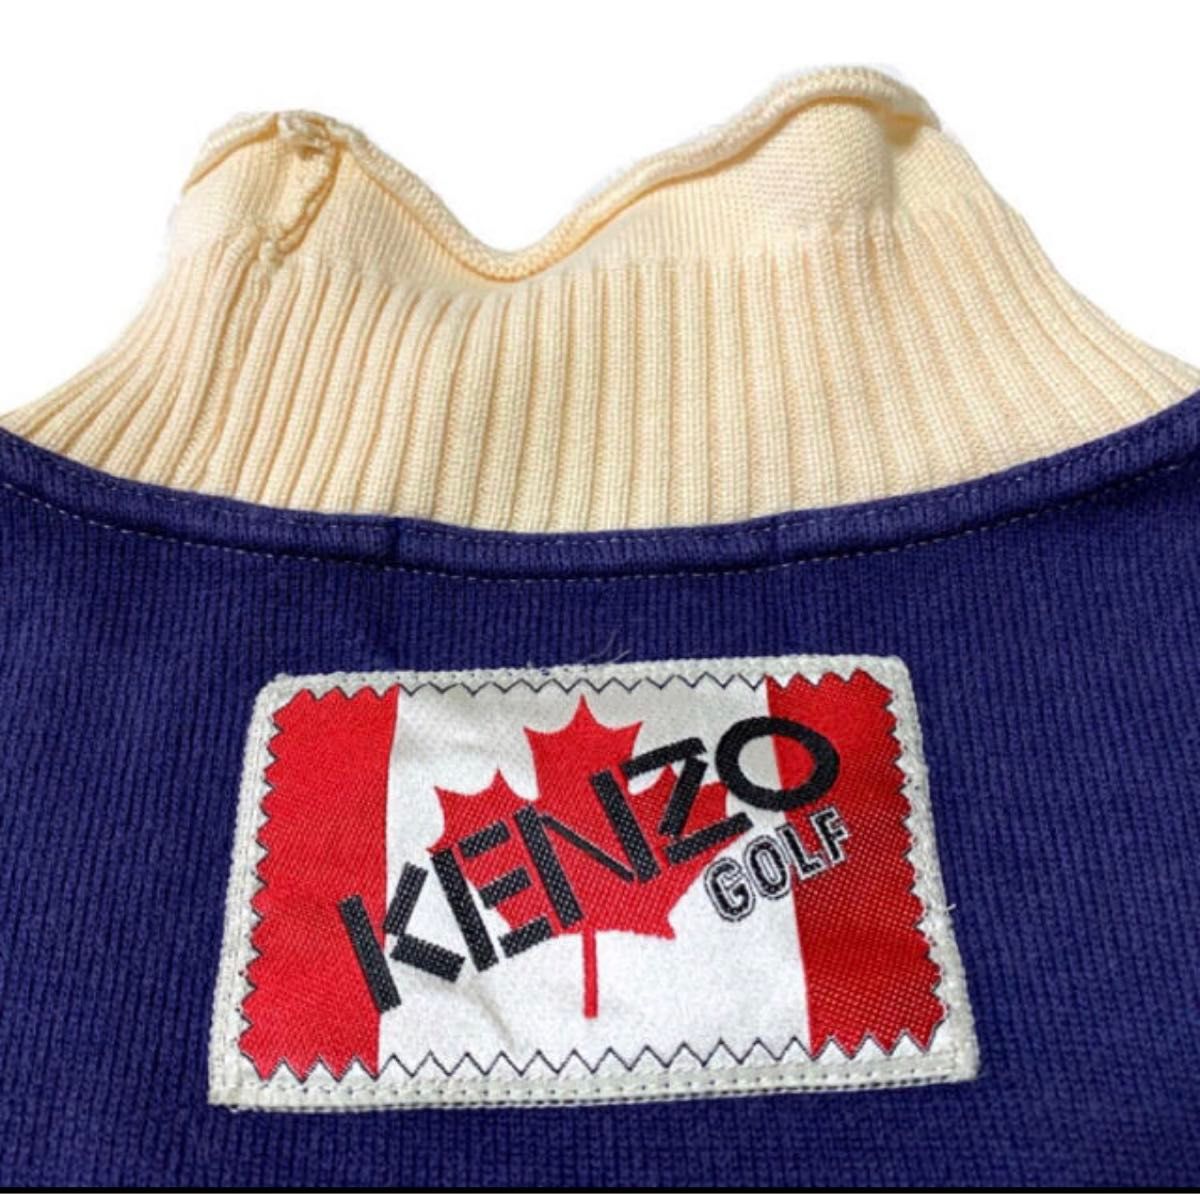 日本製【KENZO GOLF】ケンゾーゴルフ1 スェット サイド刺繍 ロゴワッペン